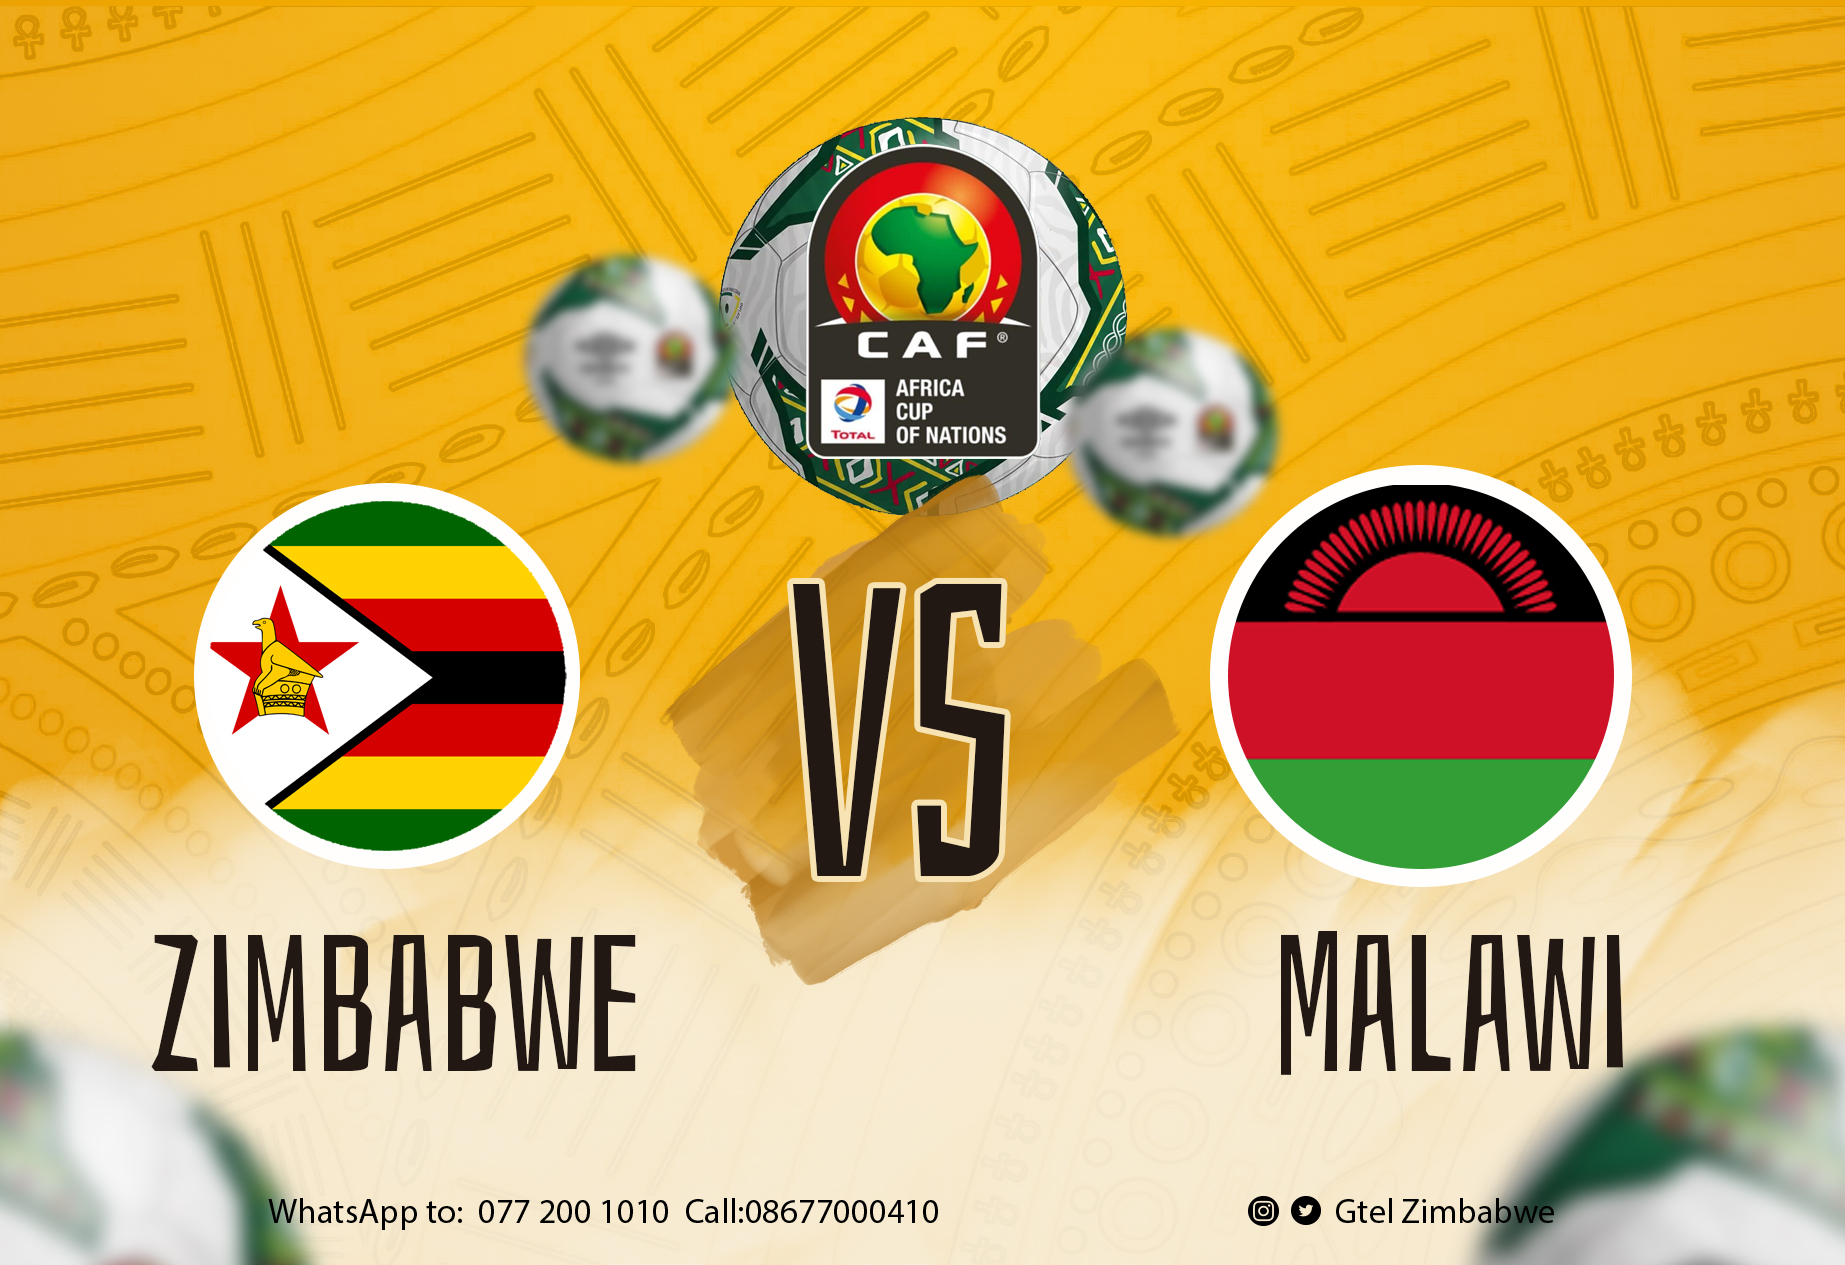 Watch Live AFCON Match On Livestream: Malawi Vs Zimbabwe @ 1800hrs 